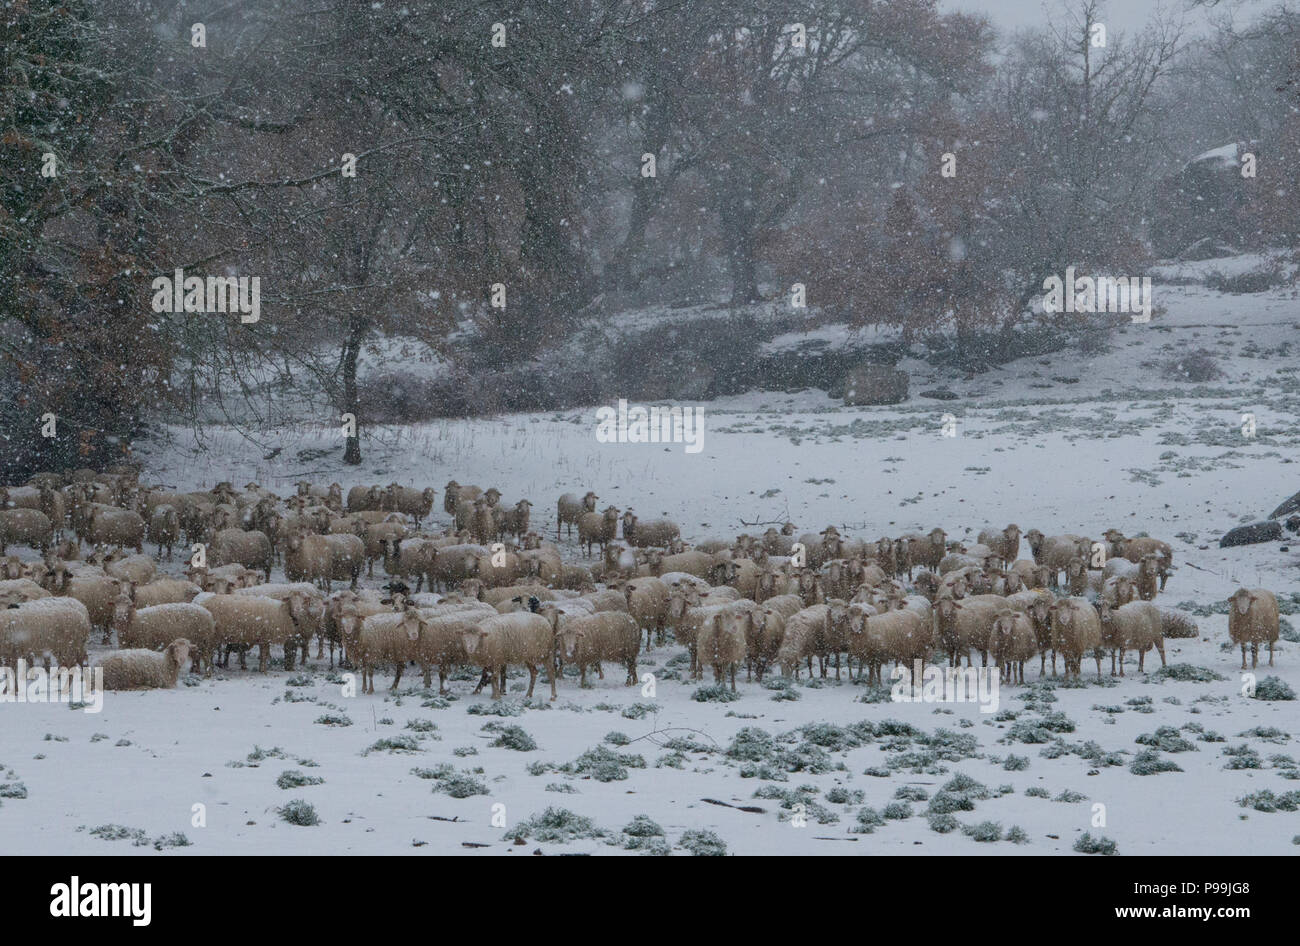 Schafe (Ovis orientalis), Herde von Schafen im Schnee mit Bäumen im Hintergrund, Mammoiada Sardinien, Italien Stockfoto